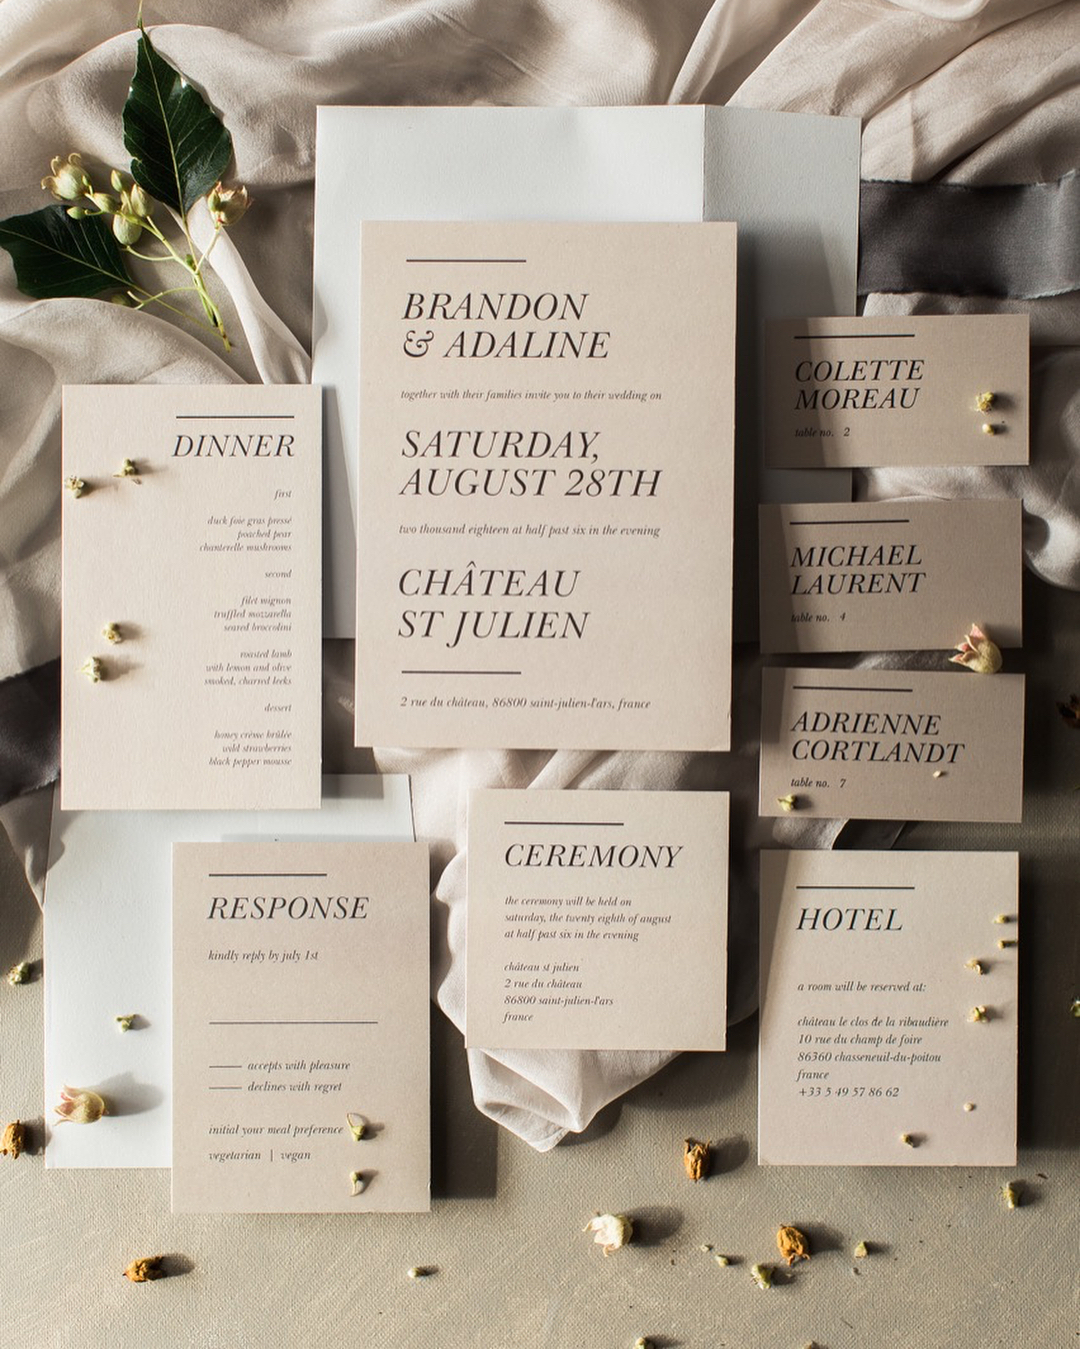 Minimalist wedding invitation